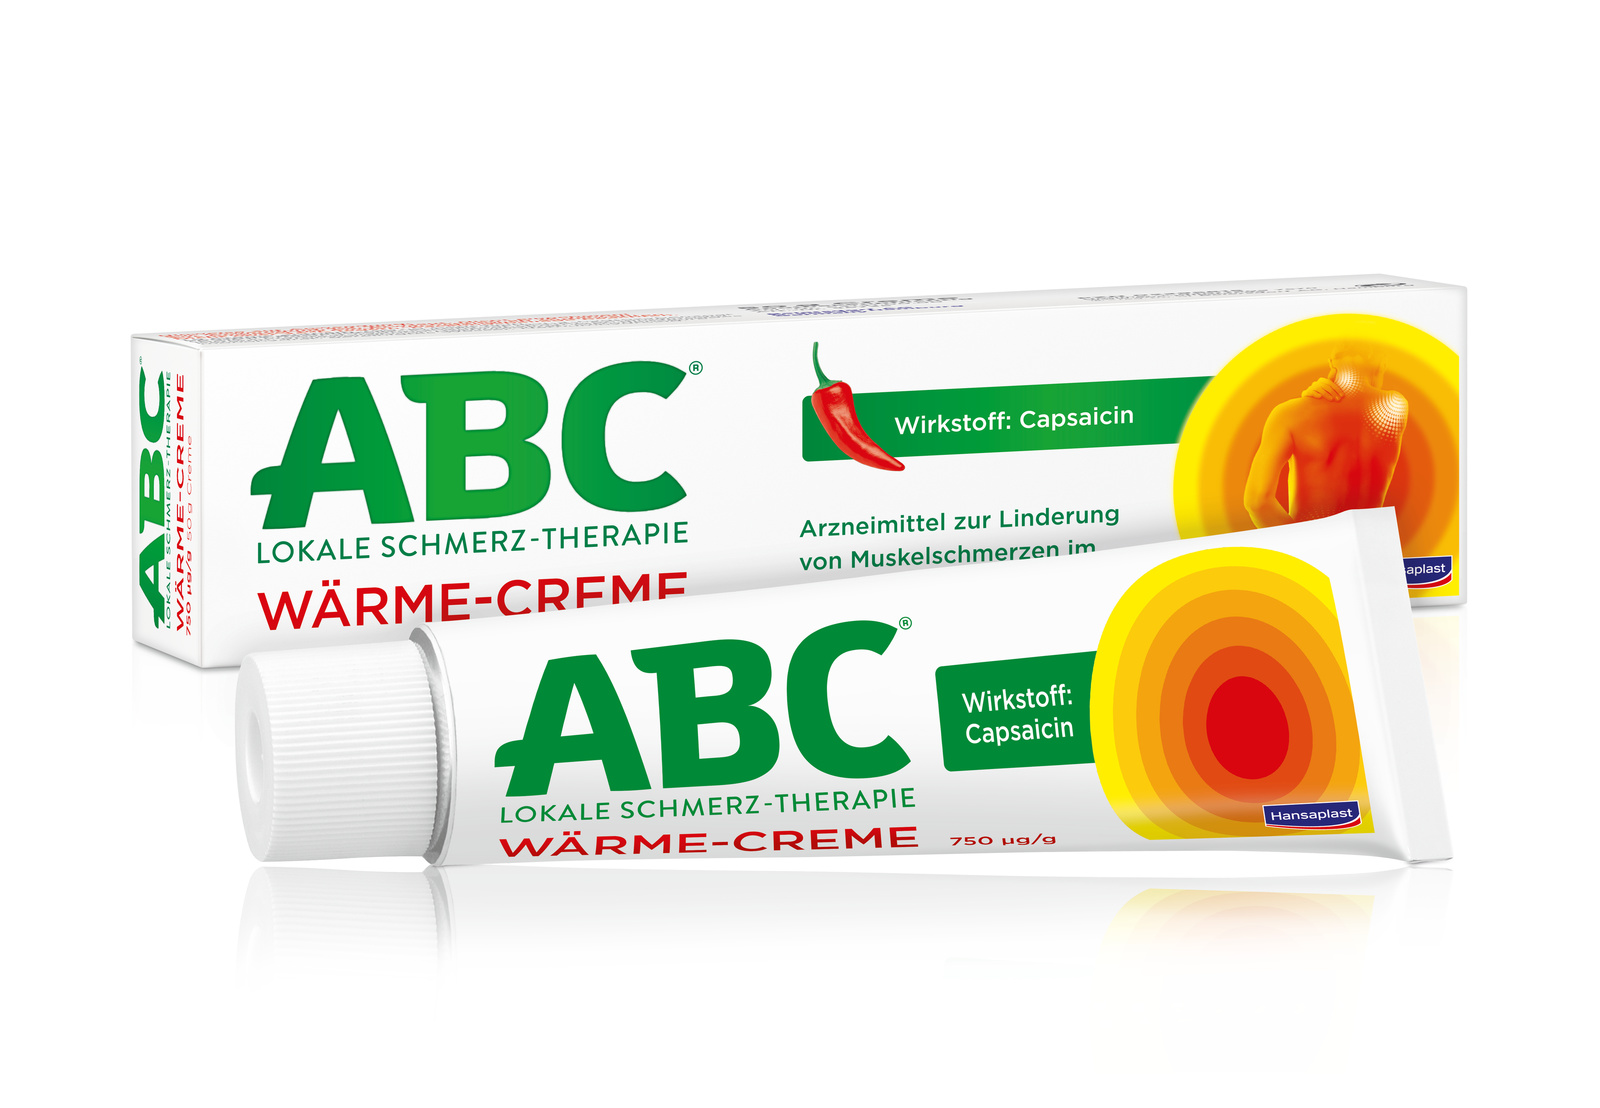 Abbildung ABC Lokale Schmerz-Therapie Wärme-Creme 750 Mikrogramm/g Creme